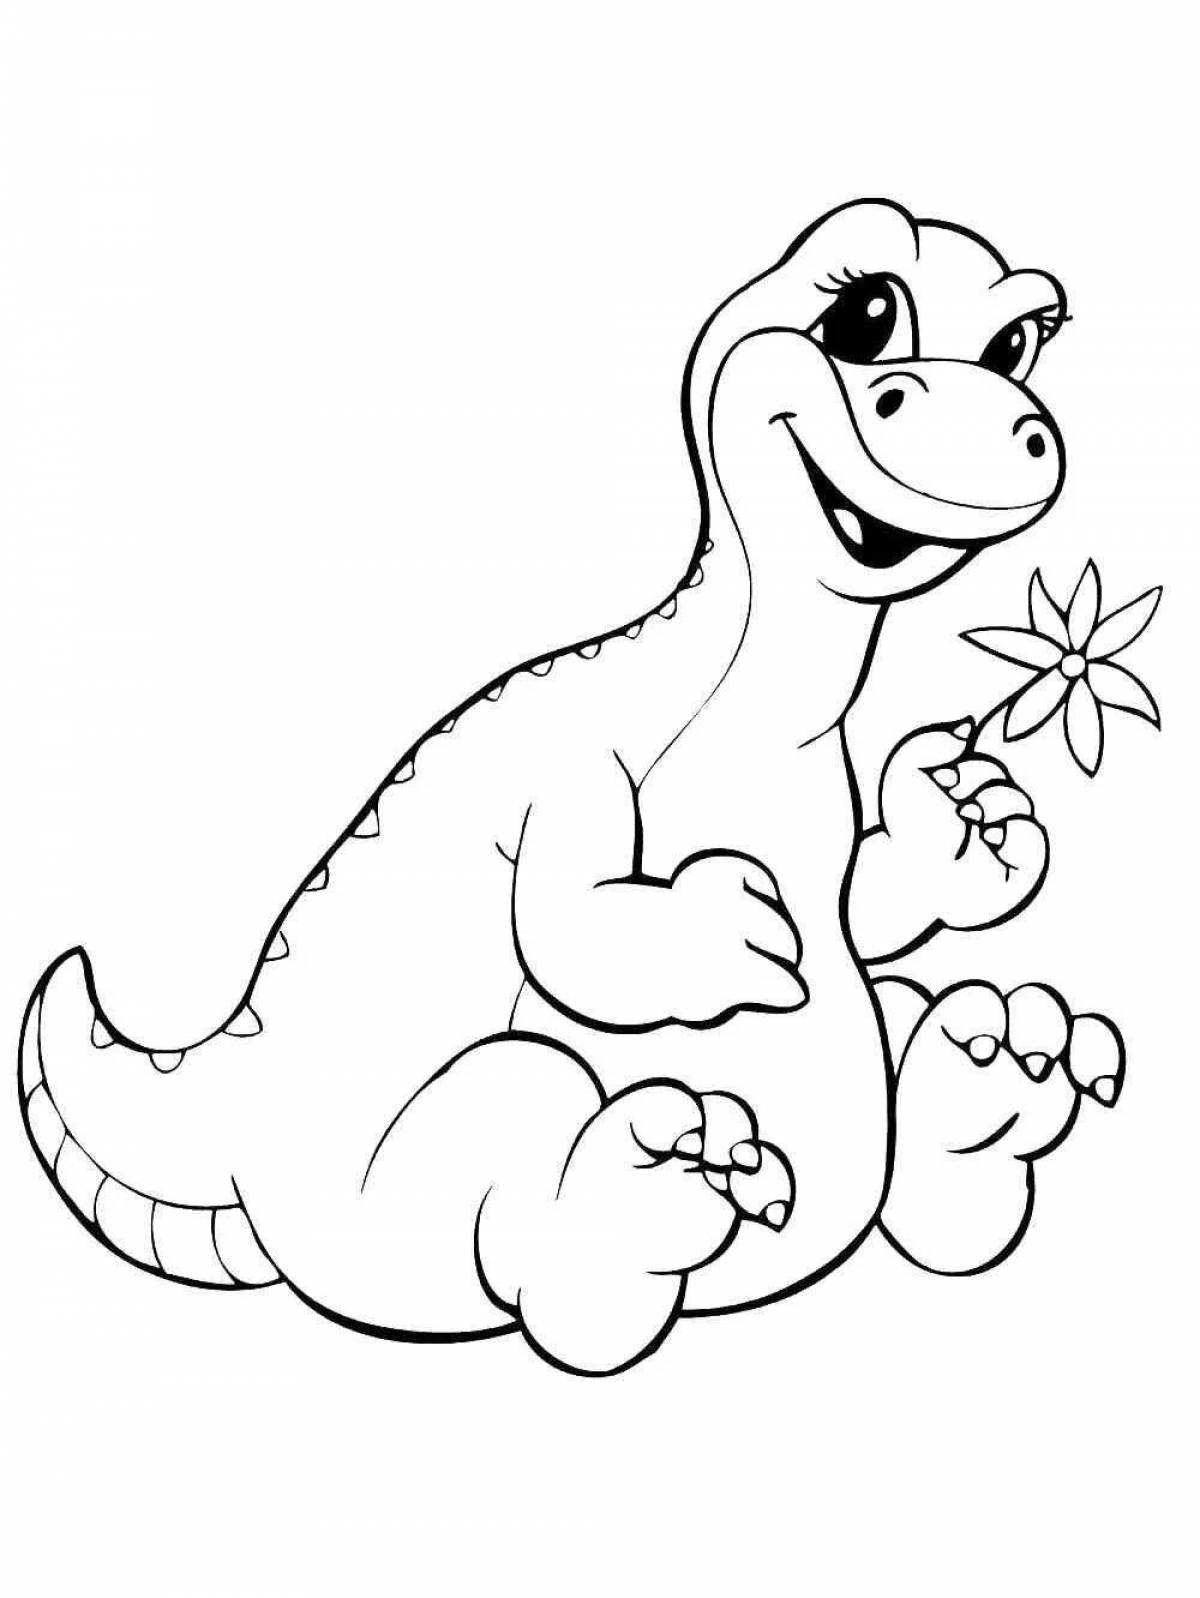 Раскраска динозавр формат а4. Динозавры / раскраска. Раскраска "Динозаврики". Динозавр раскраска для детей. Раскраска Динозаврики для малышей.